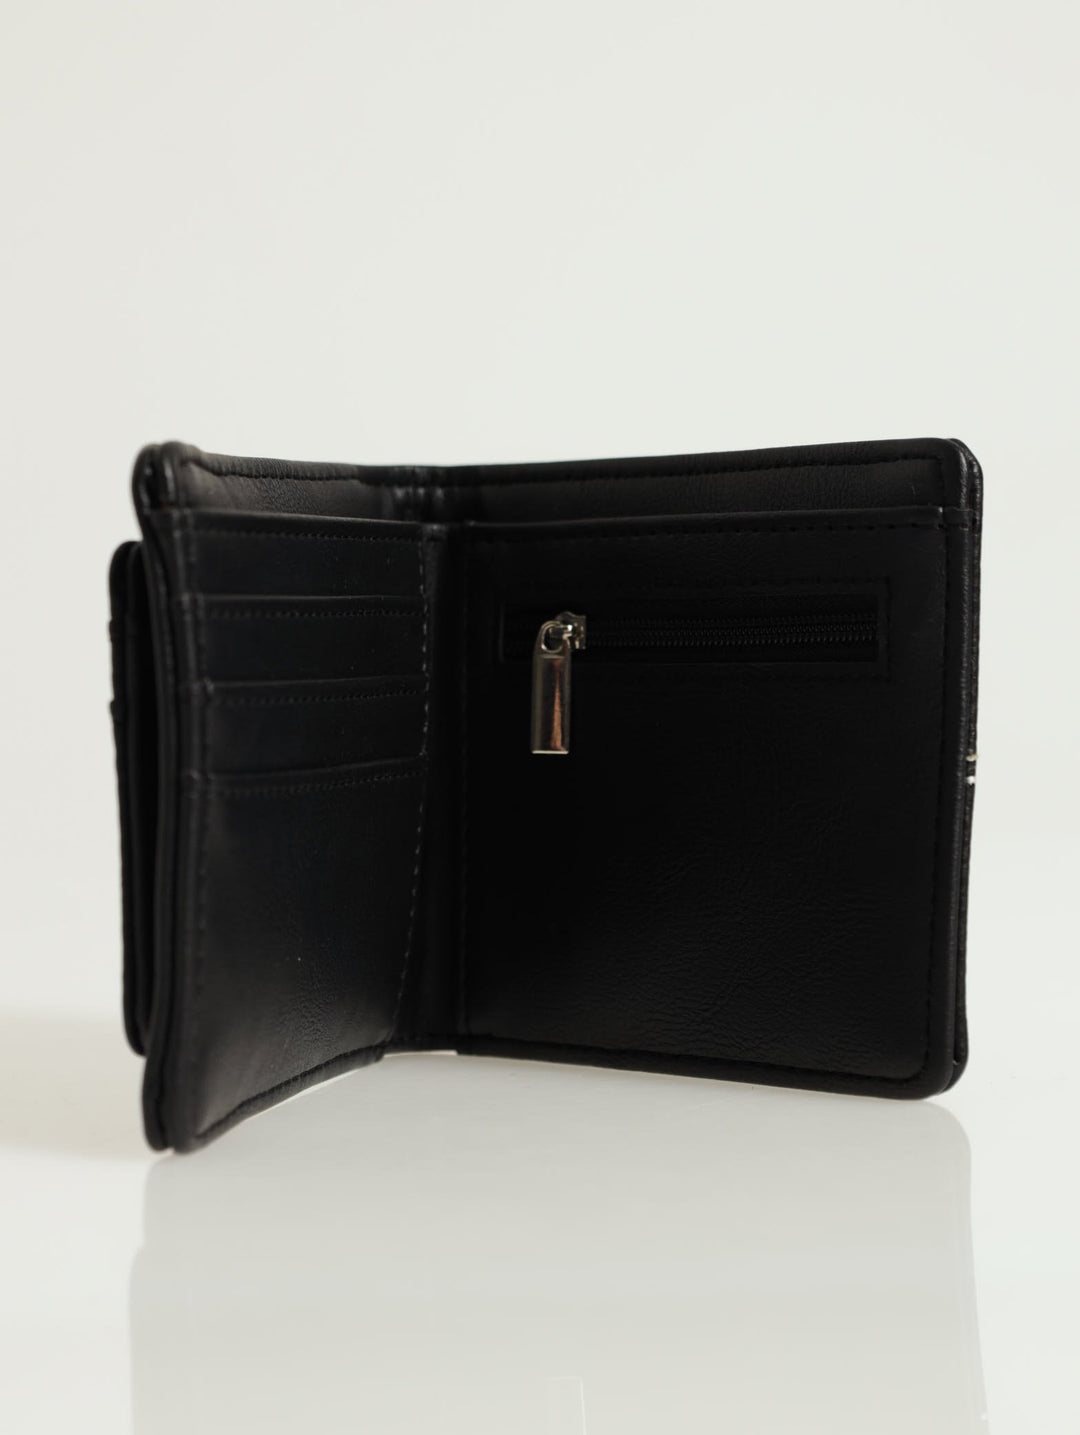 Card Holder Wallet - Black